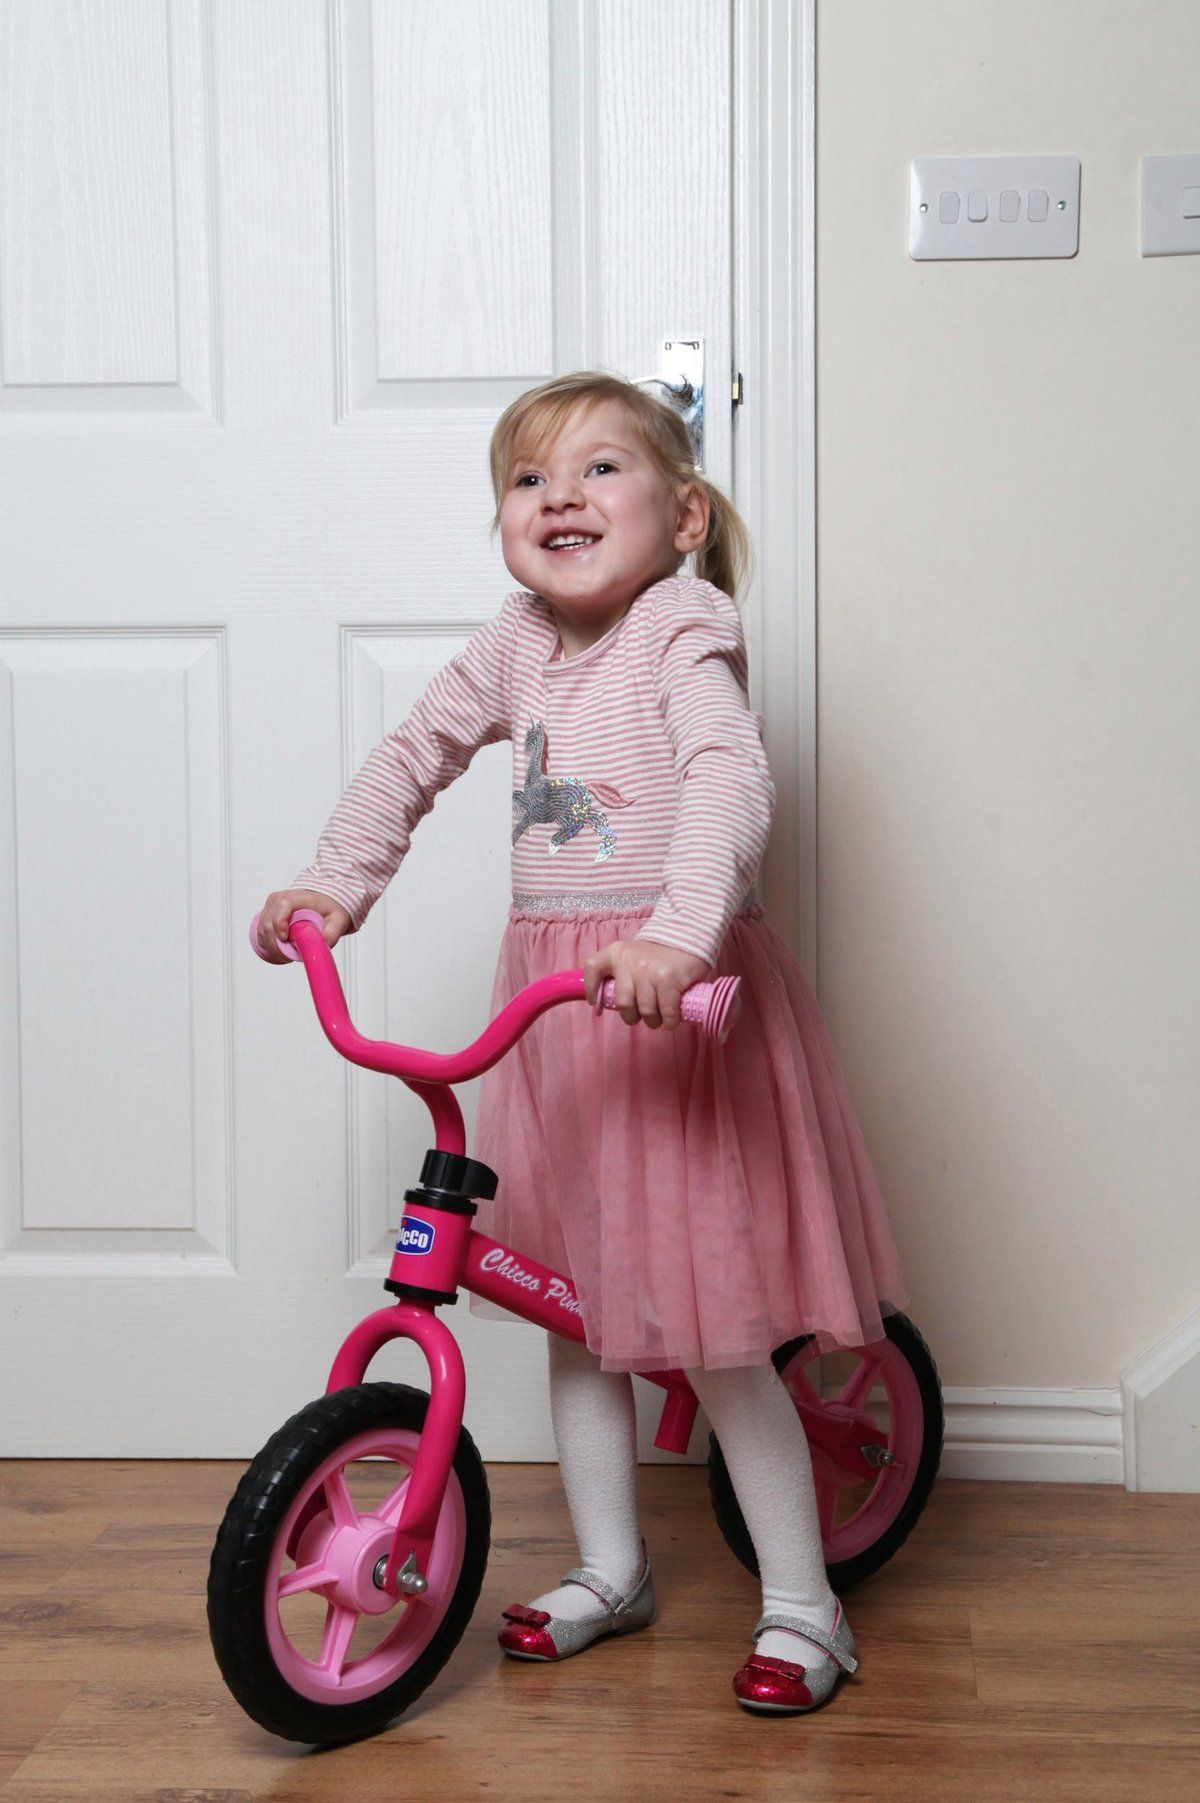 Дівчинка, якій лікарі пророкували життя в інвалідному кріслі, тепер сама катається на велосипеді. Лікарі прогнозували їй життя в інвалідному кріслі та неможливість пересуватися самостійно.